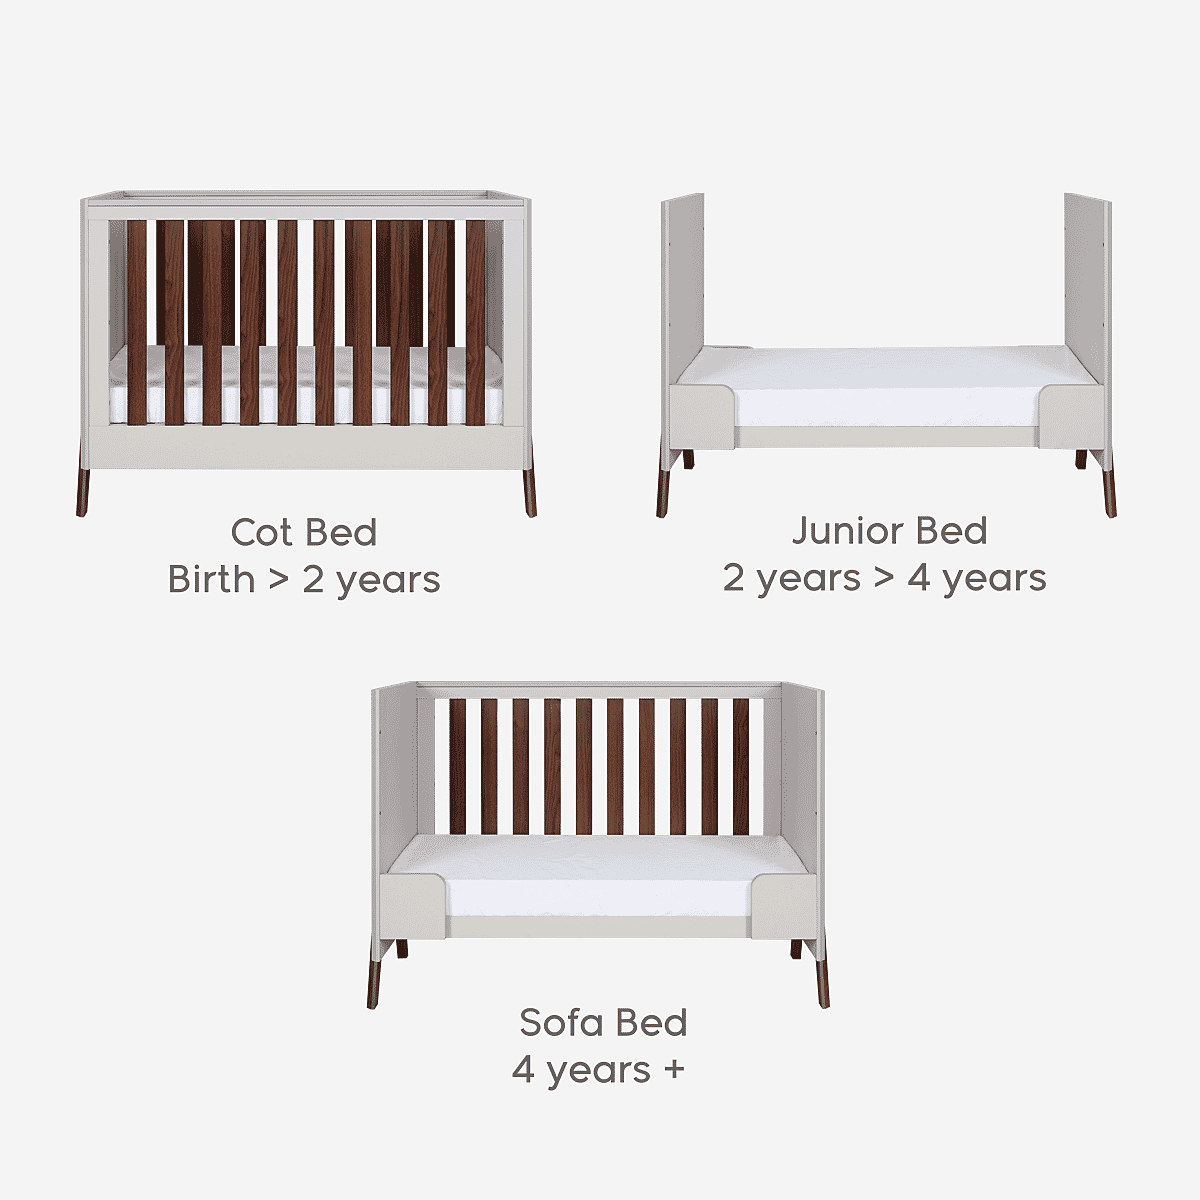 Tutti Bambini Fuori Mini Cot Bed - Warm Walnut/White Sand -  | For Your Little One